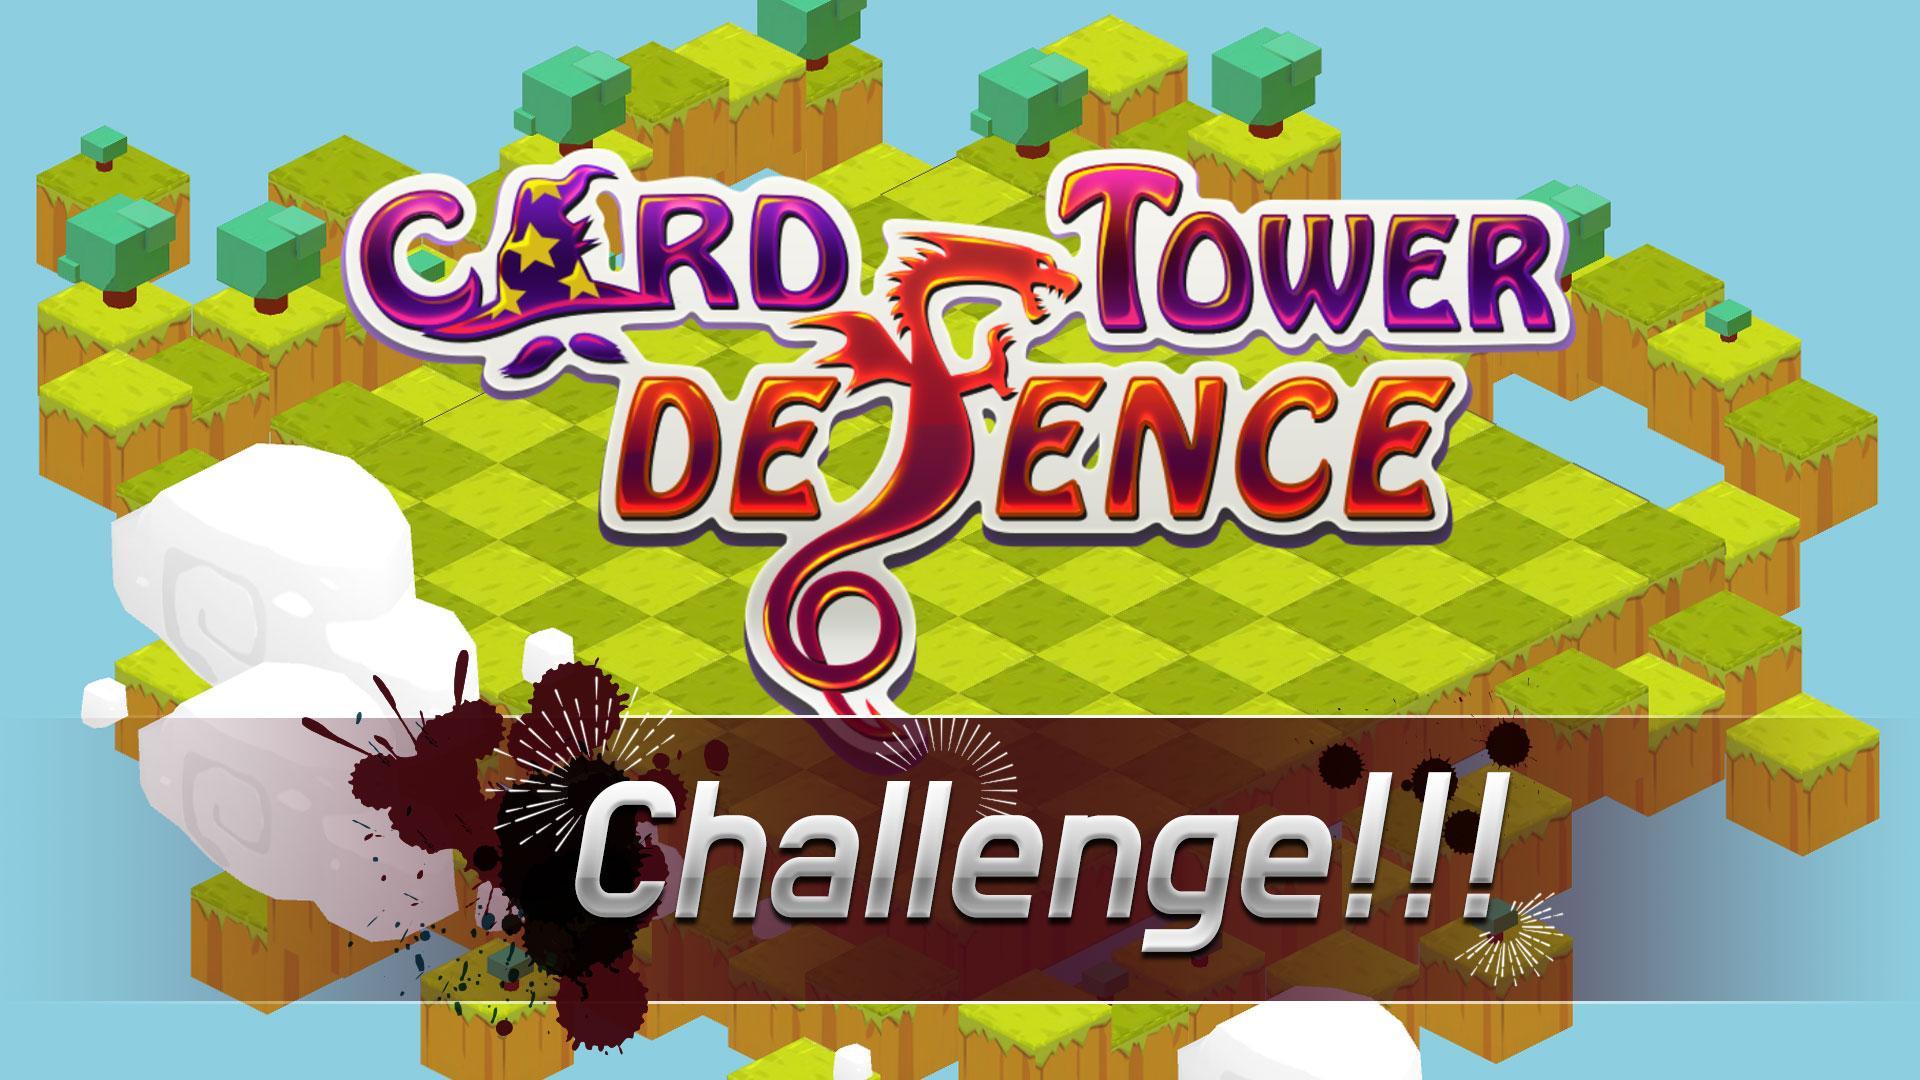 2x skibidi tower defense коды. 100 Монет туалет ТОВЕР дефенс. Random Cards Tower Defense рецепты. Tower Defense флеш на желтом фоне.